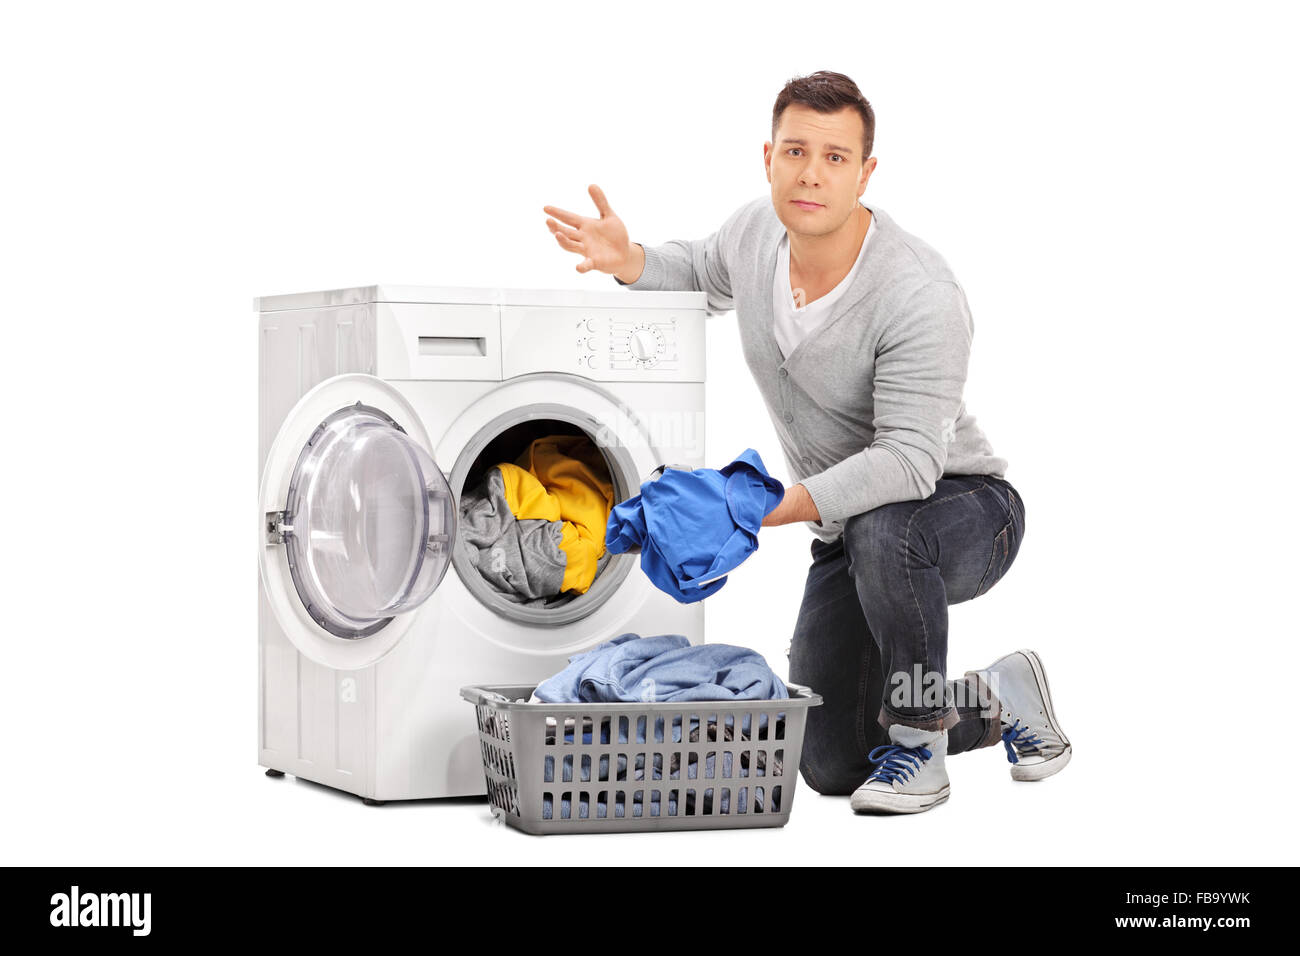 Sad young guy emptying a washing machine isolated on white background Stock Photo